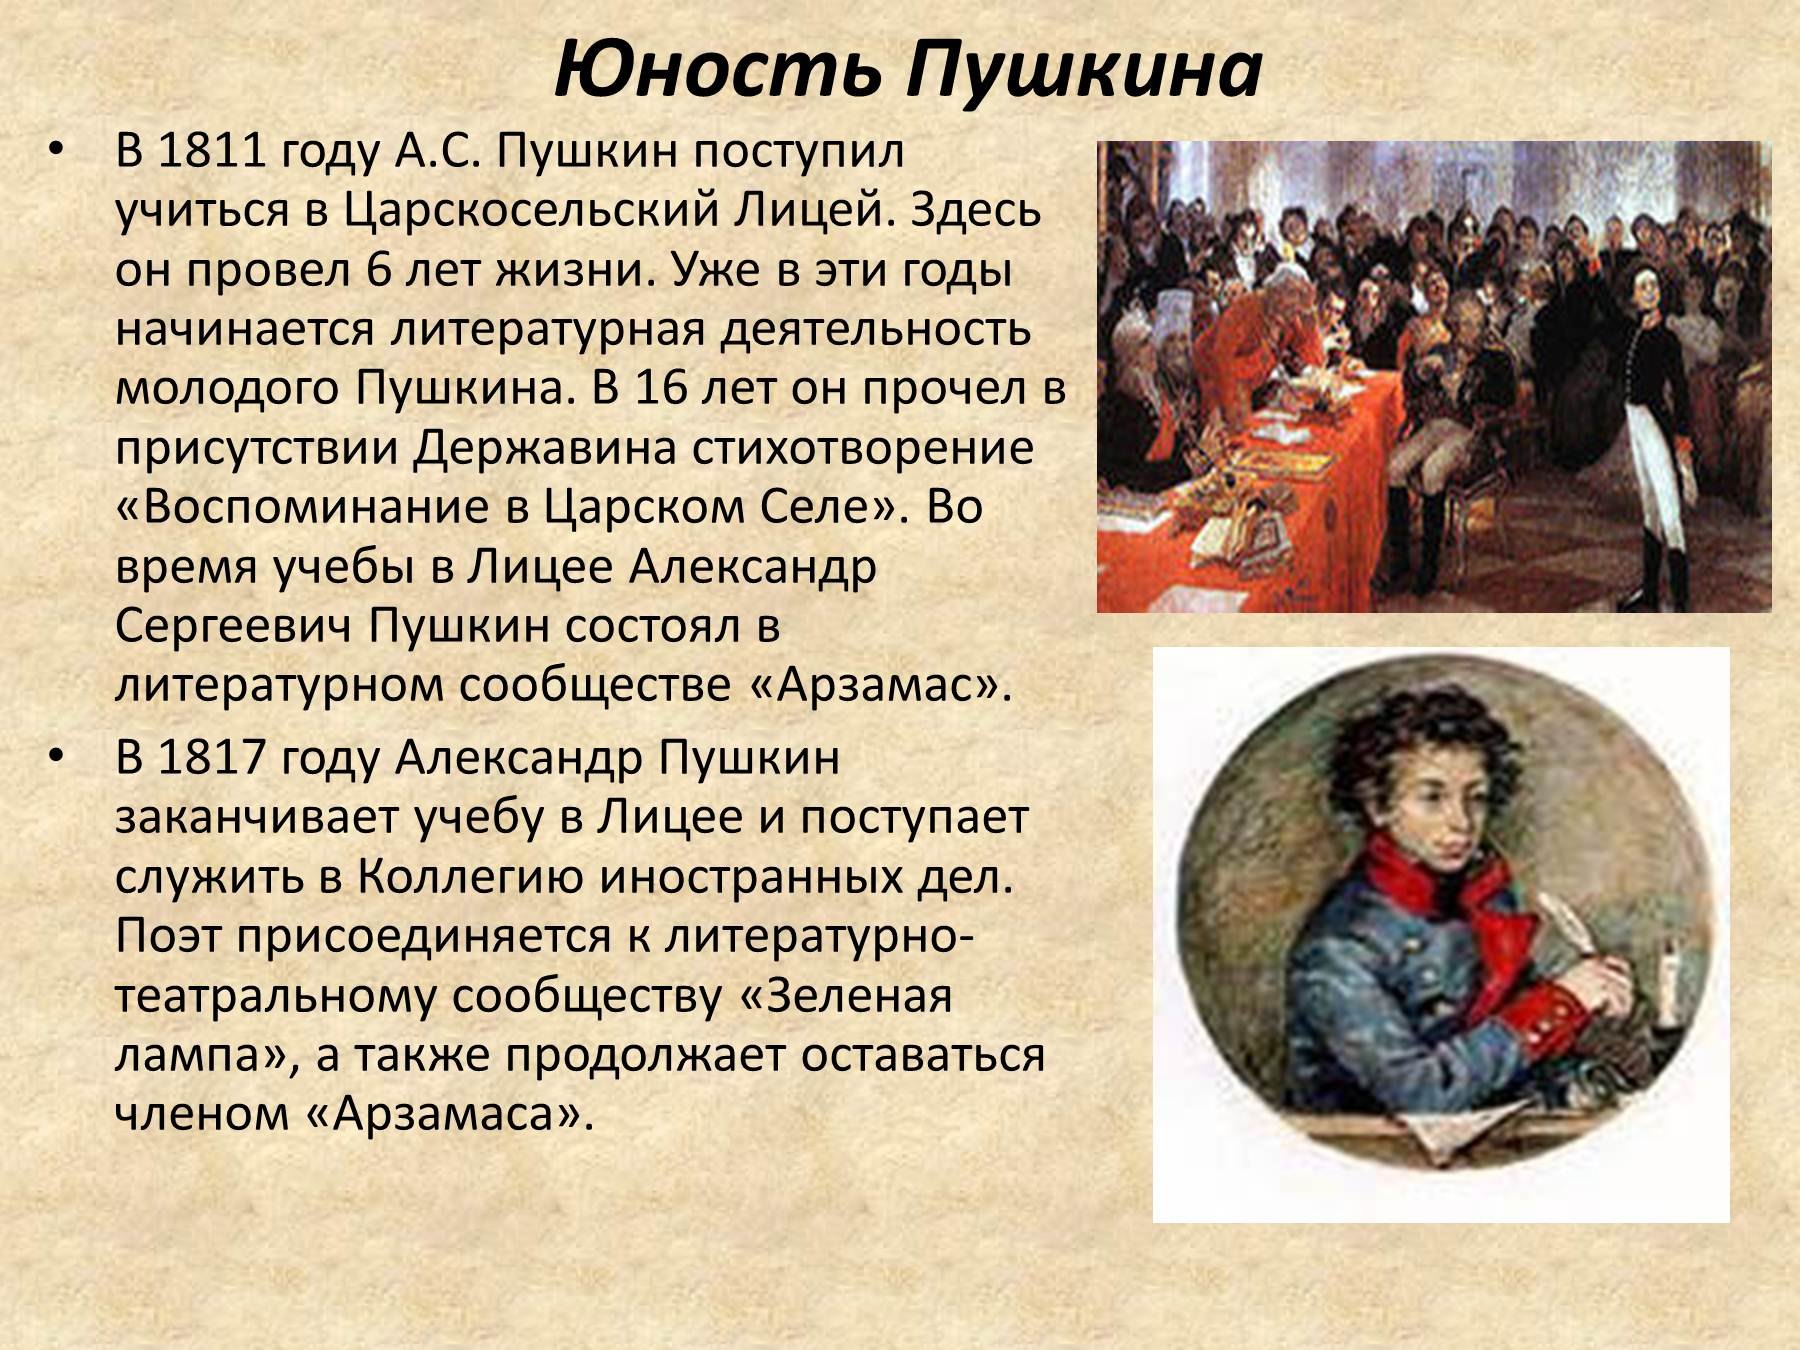 александр сергеевич пушкин биография фото